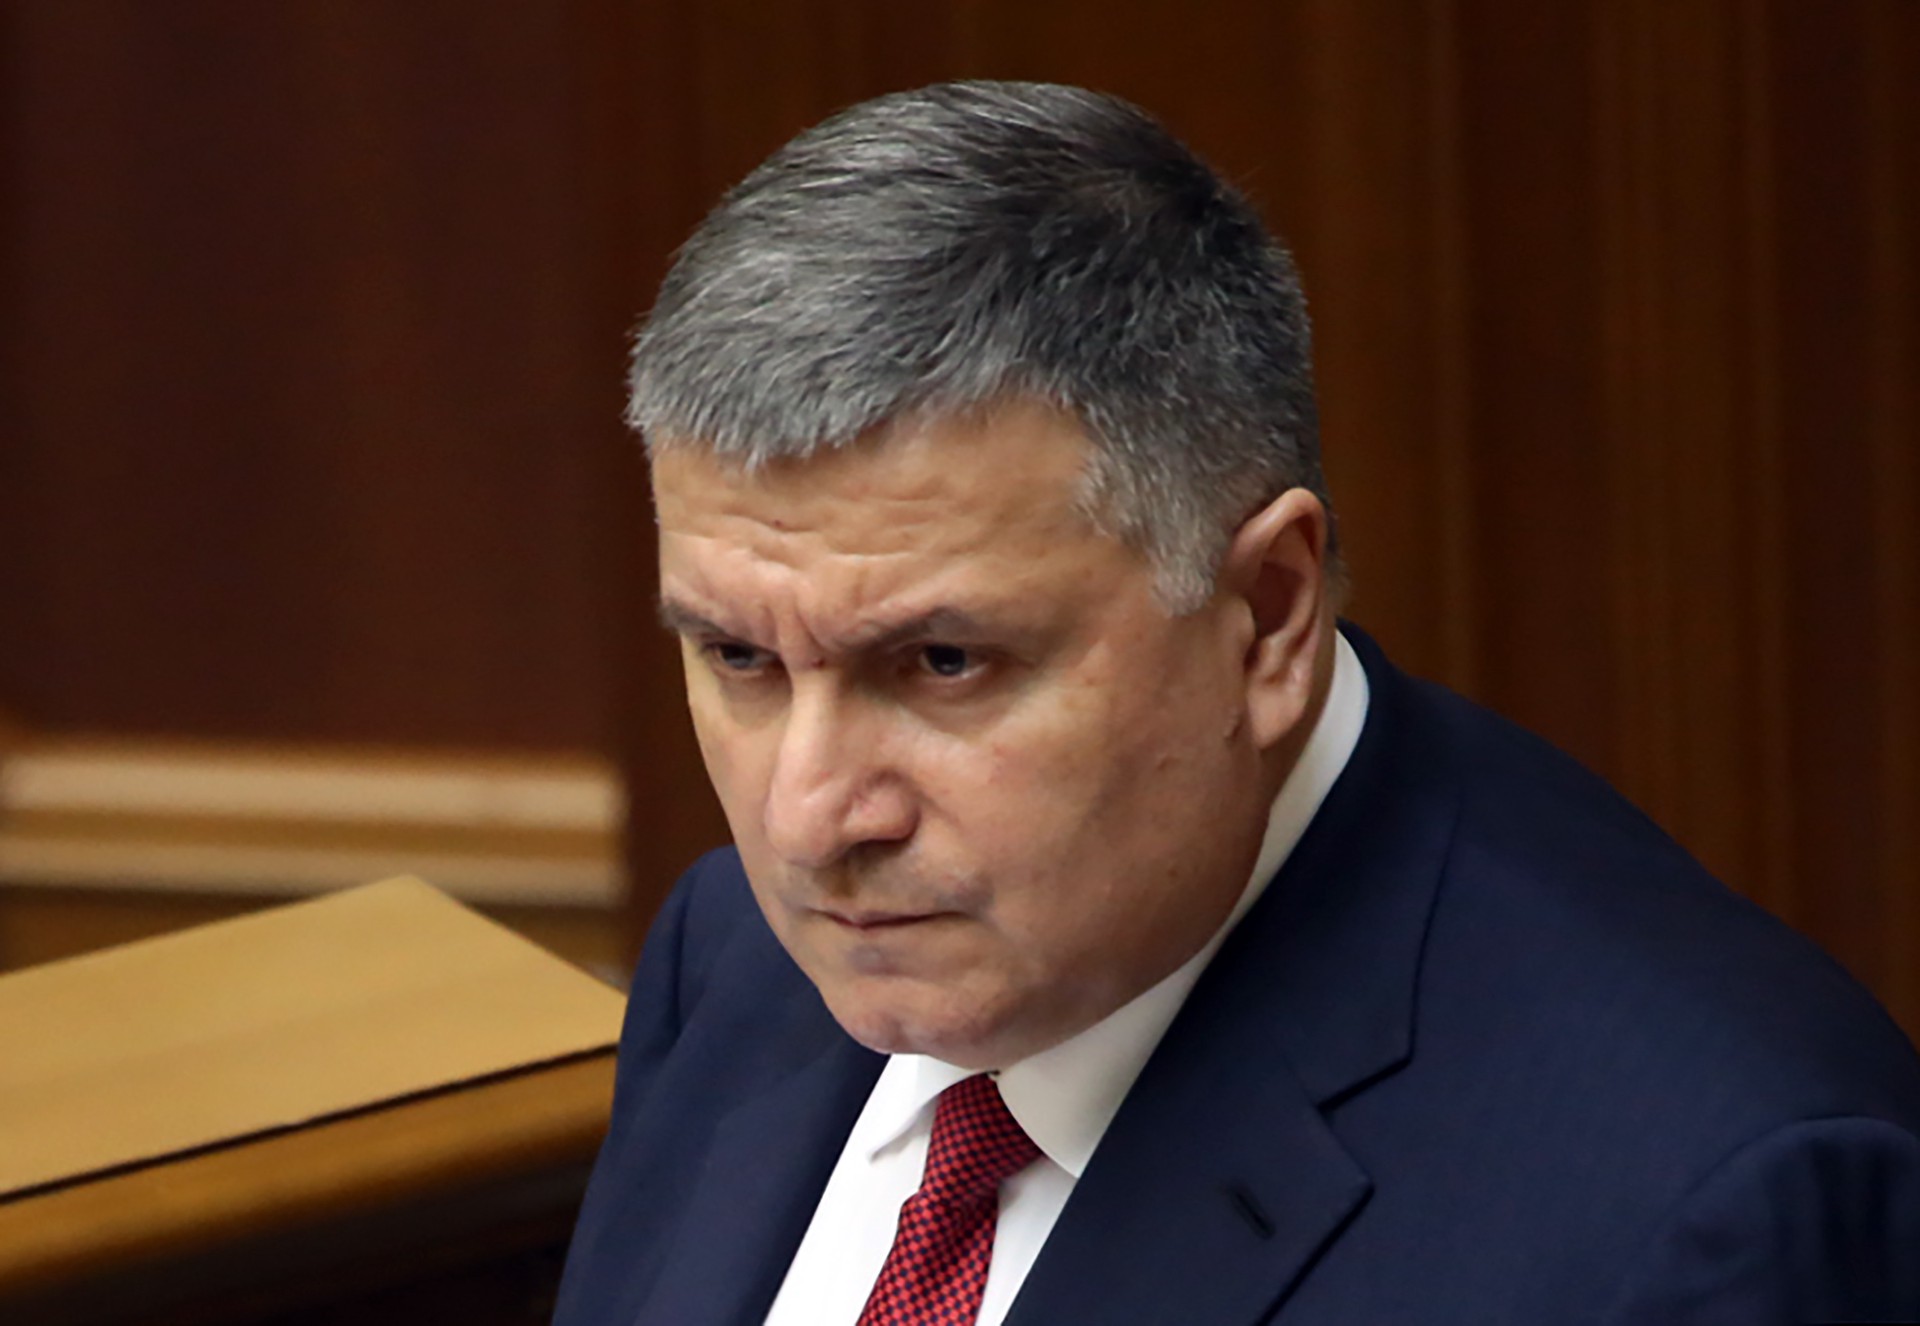 МВД России объявило в розыск бывшего министра внутренних дел Украины